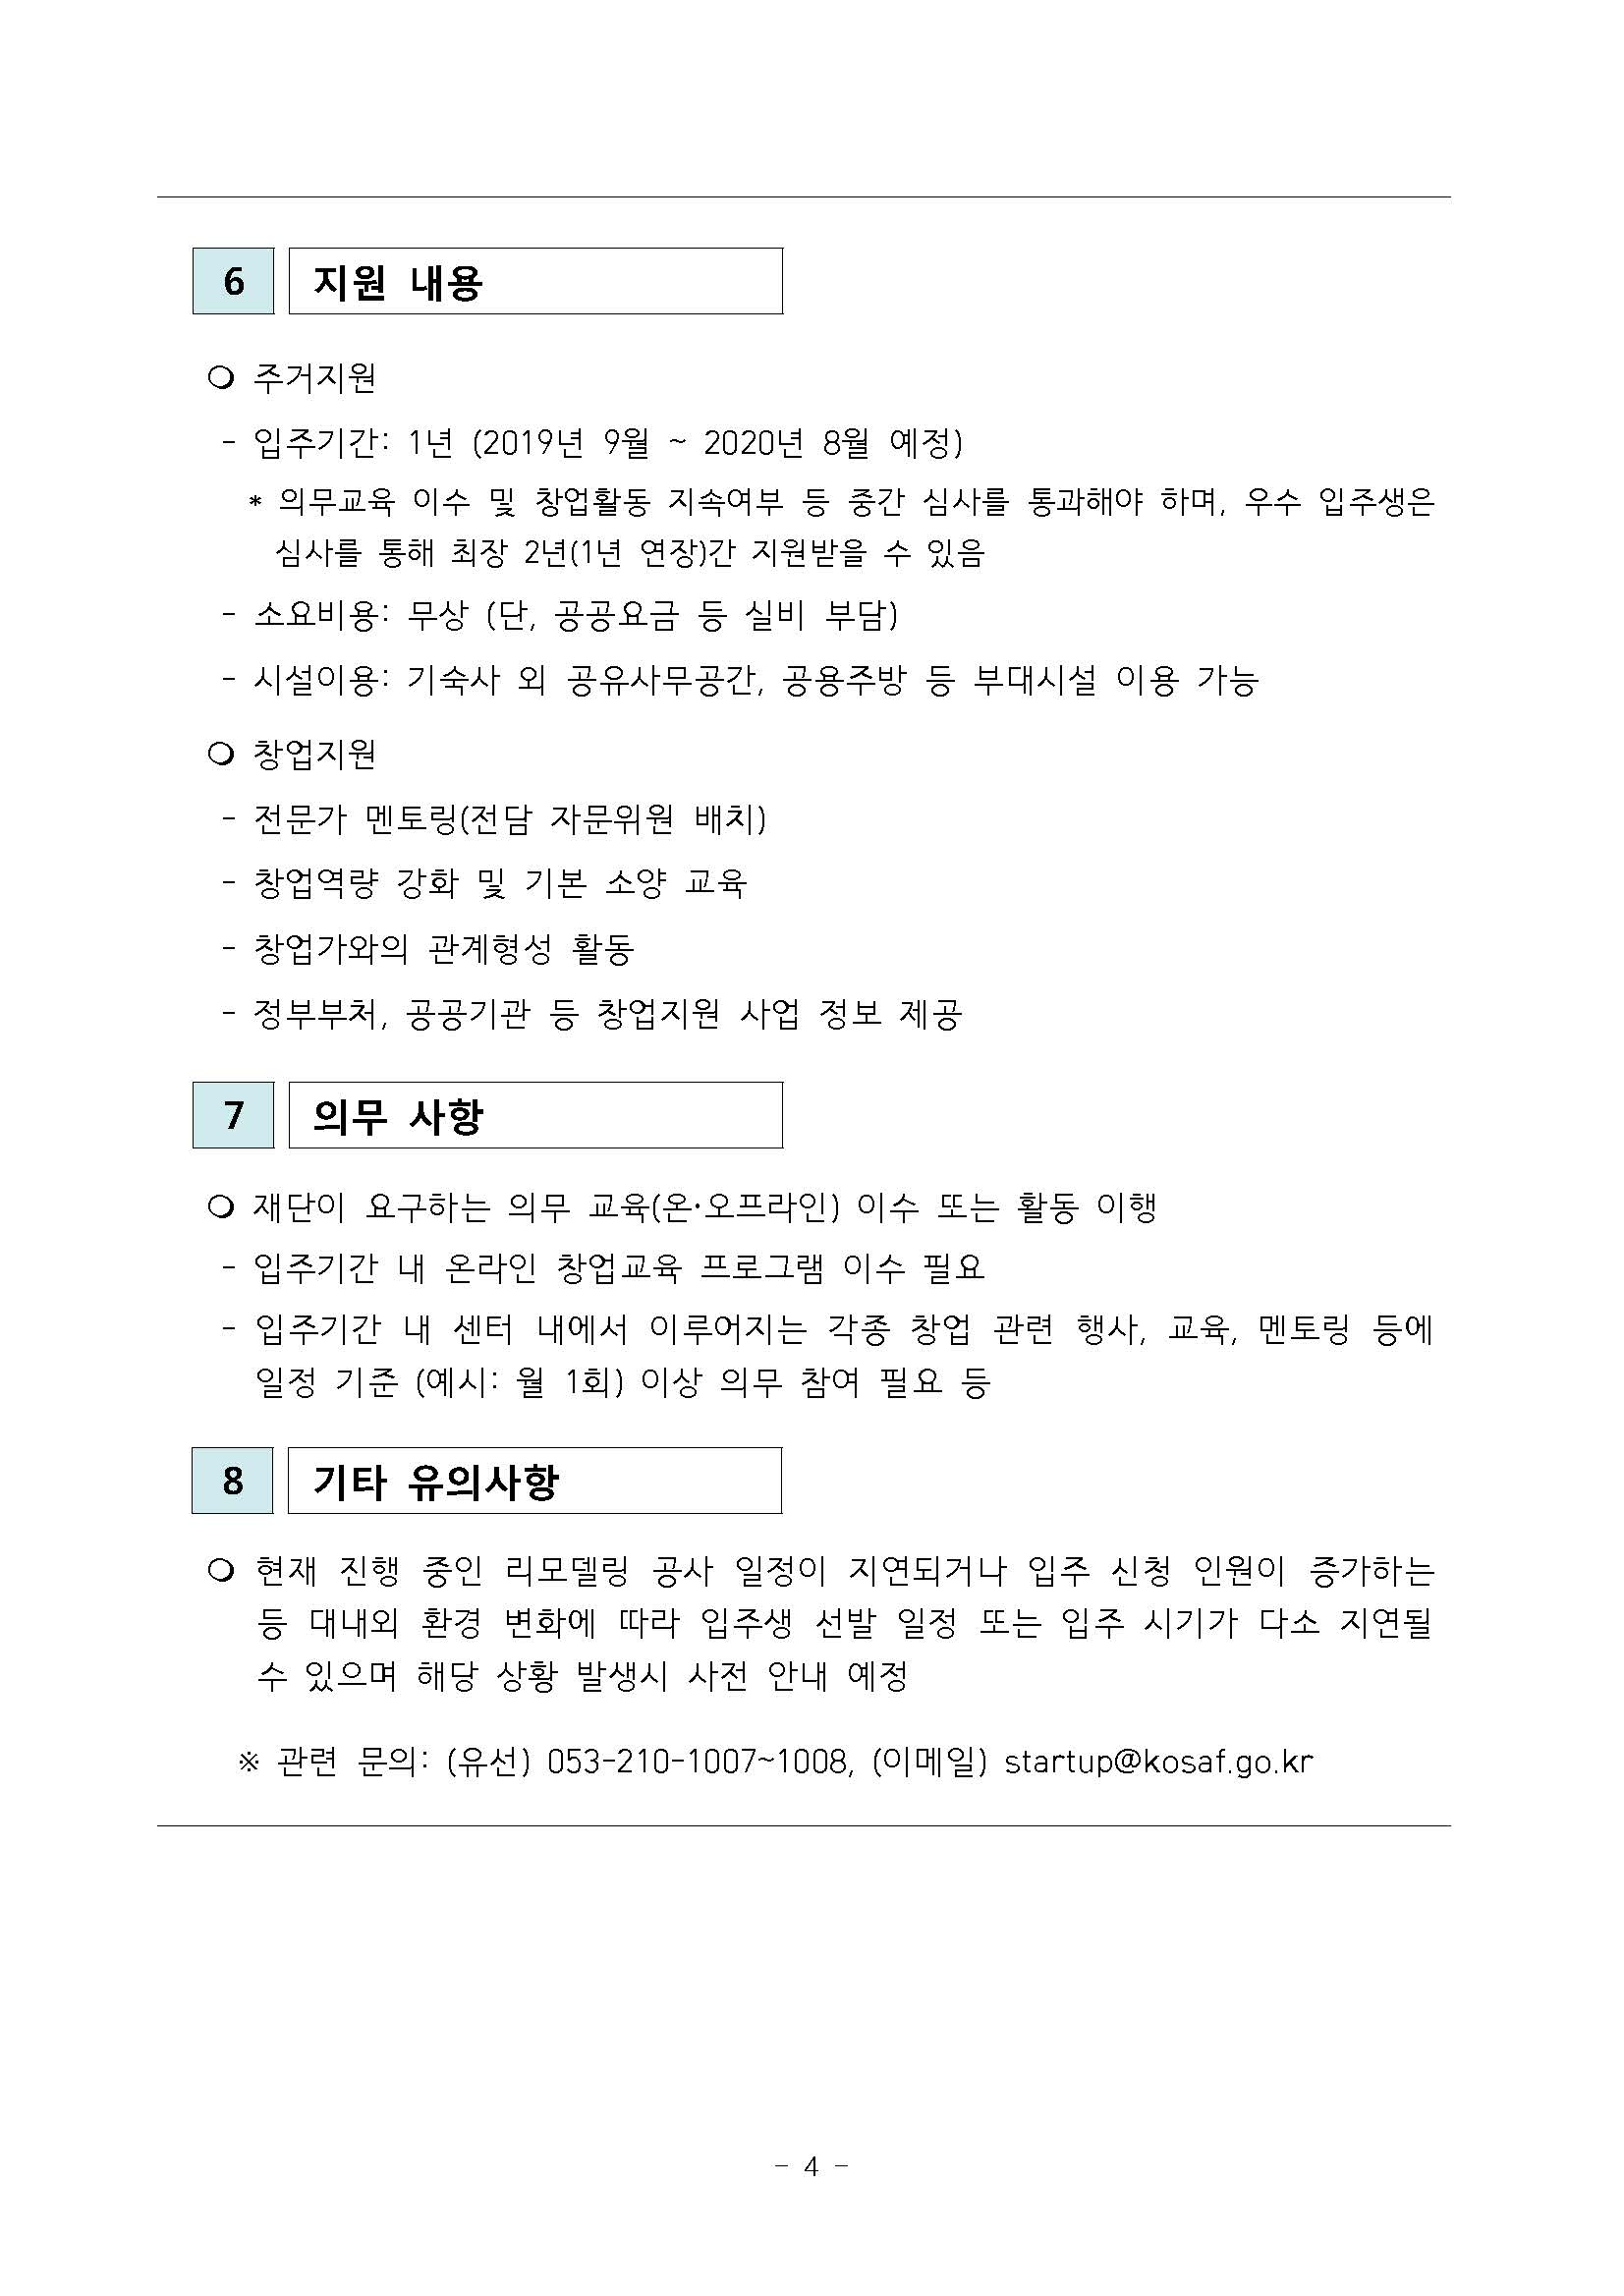 2019년 한국장학재단 창업지원형 기숙사 입주생 모집 공고_페이지_4